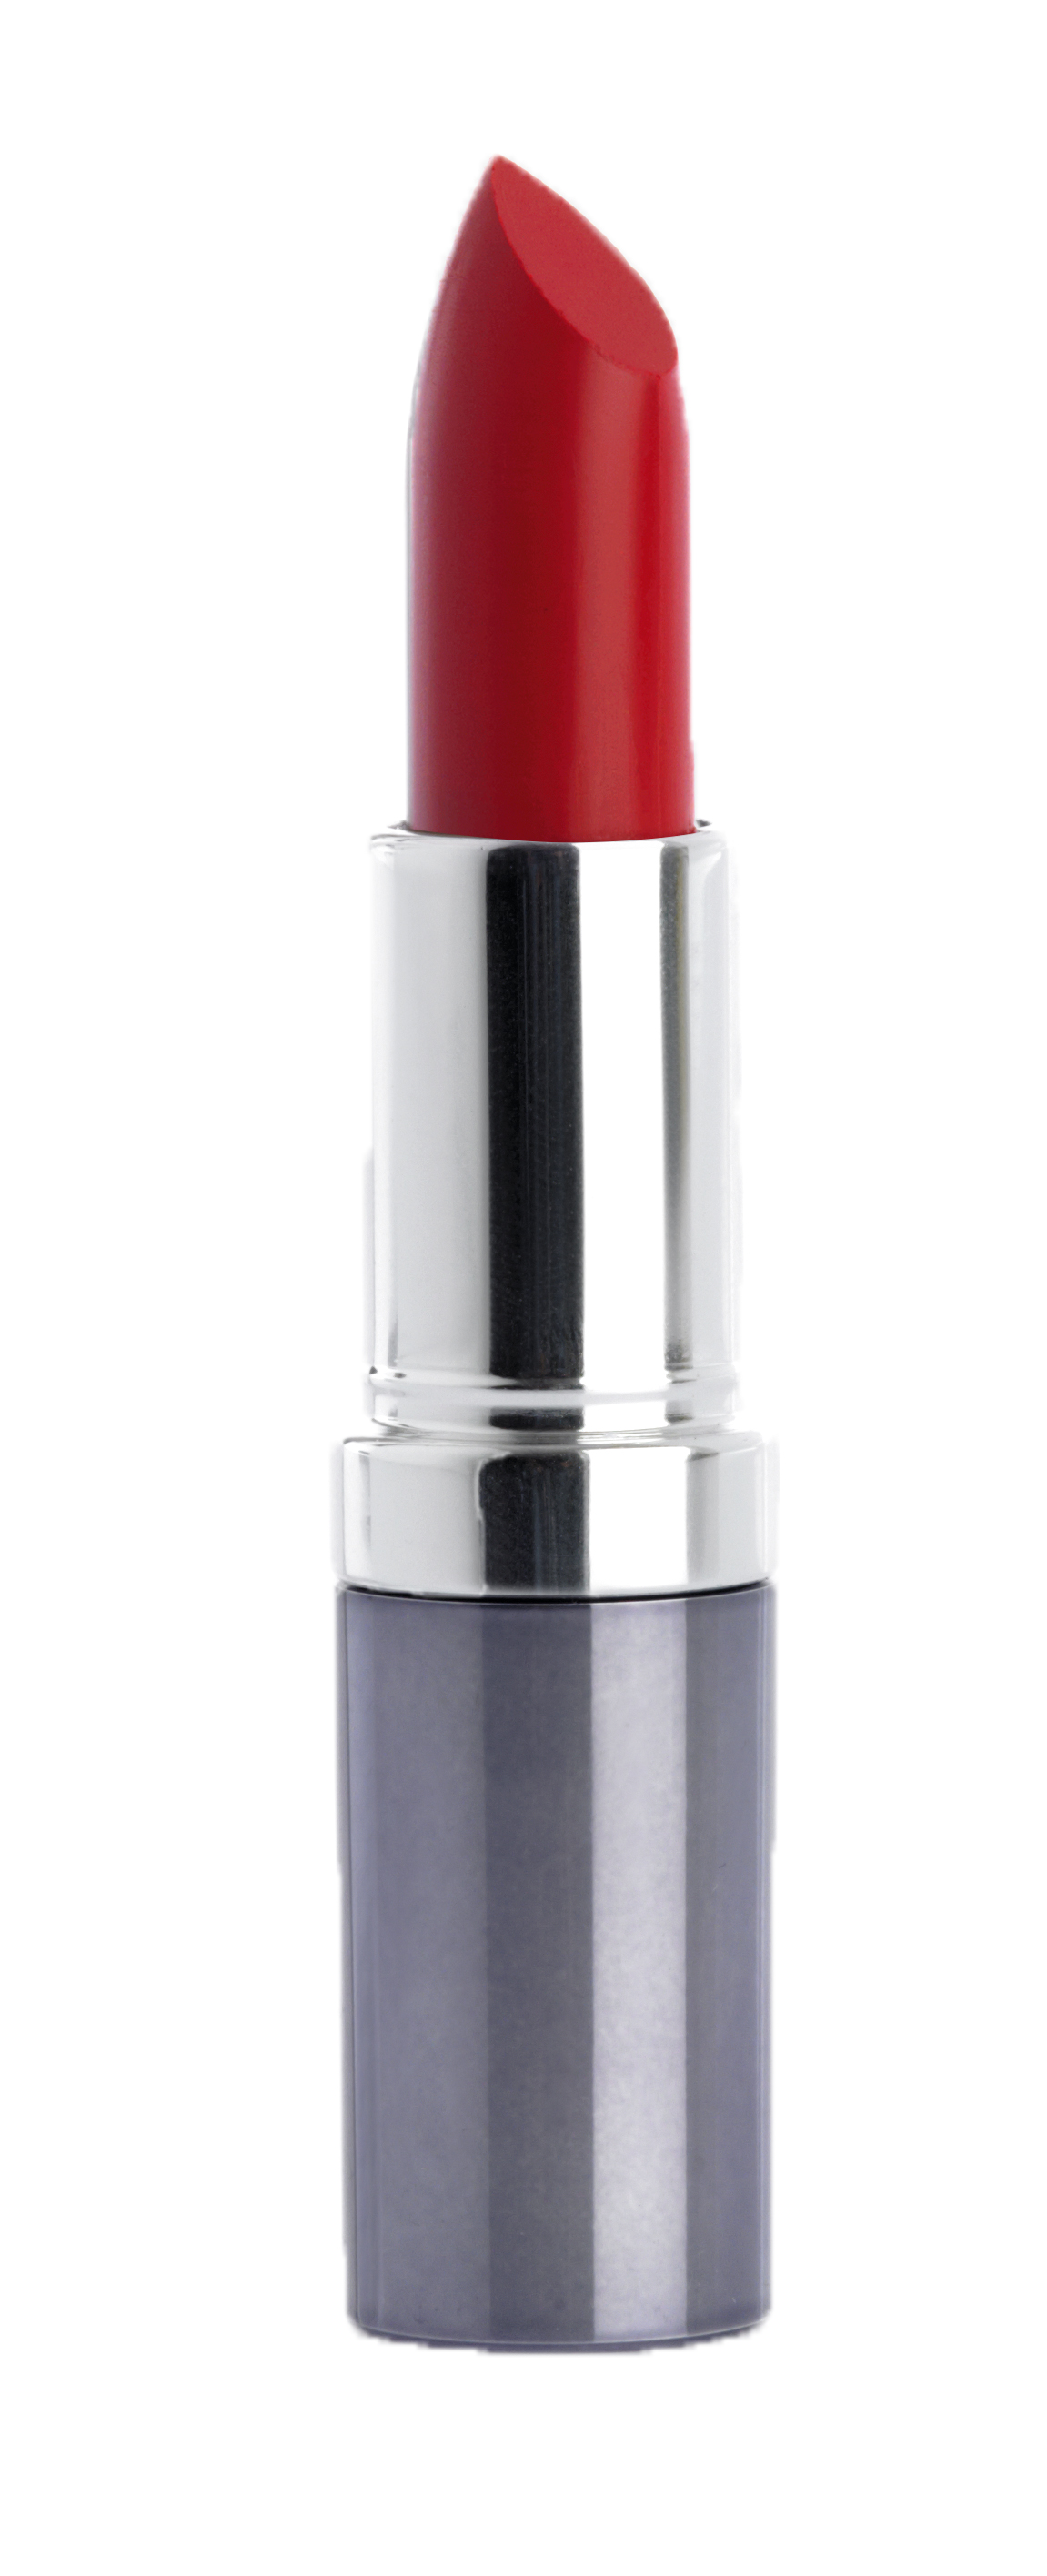 Помада для губ увлажняющая Lipstick Special, 348 естественный красный